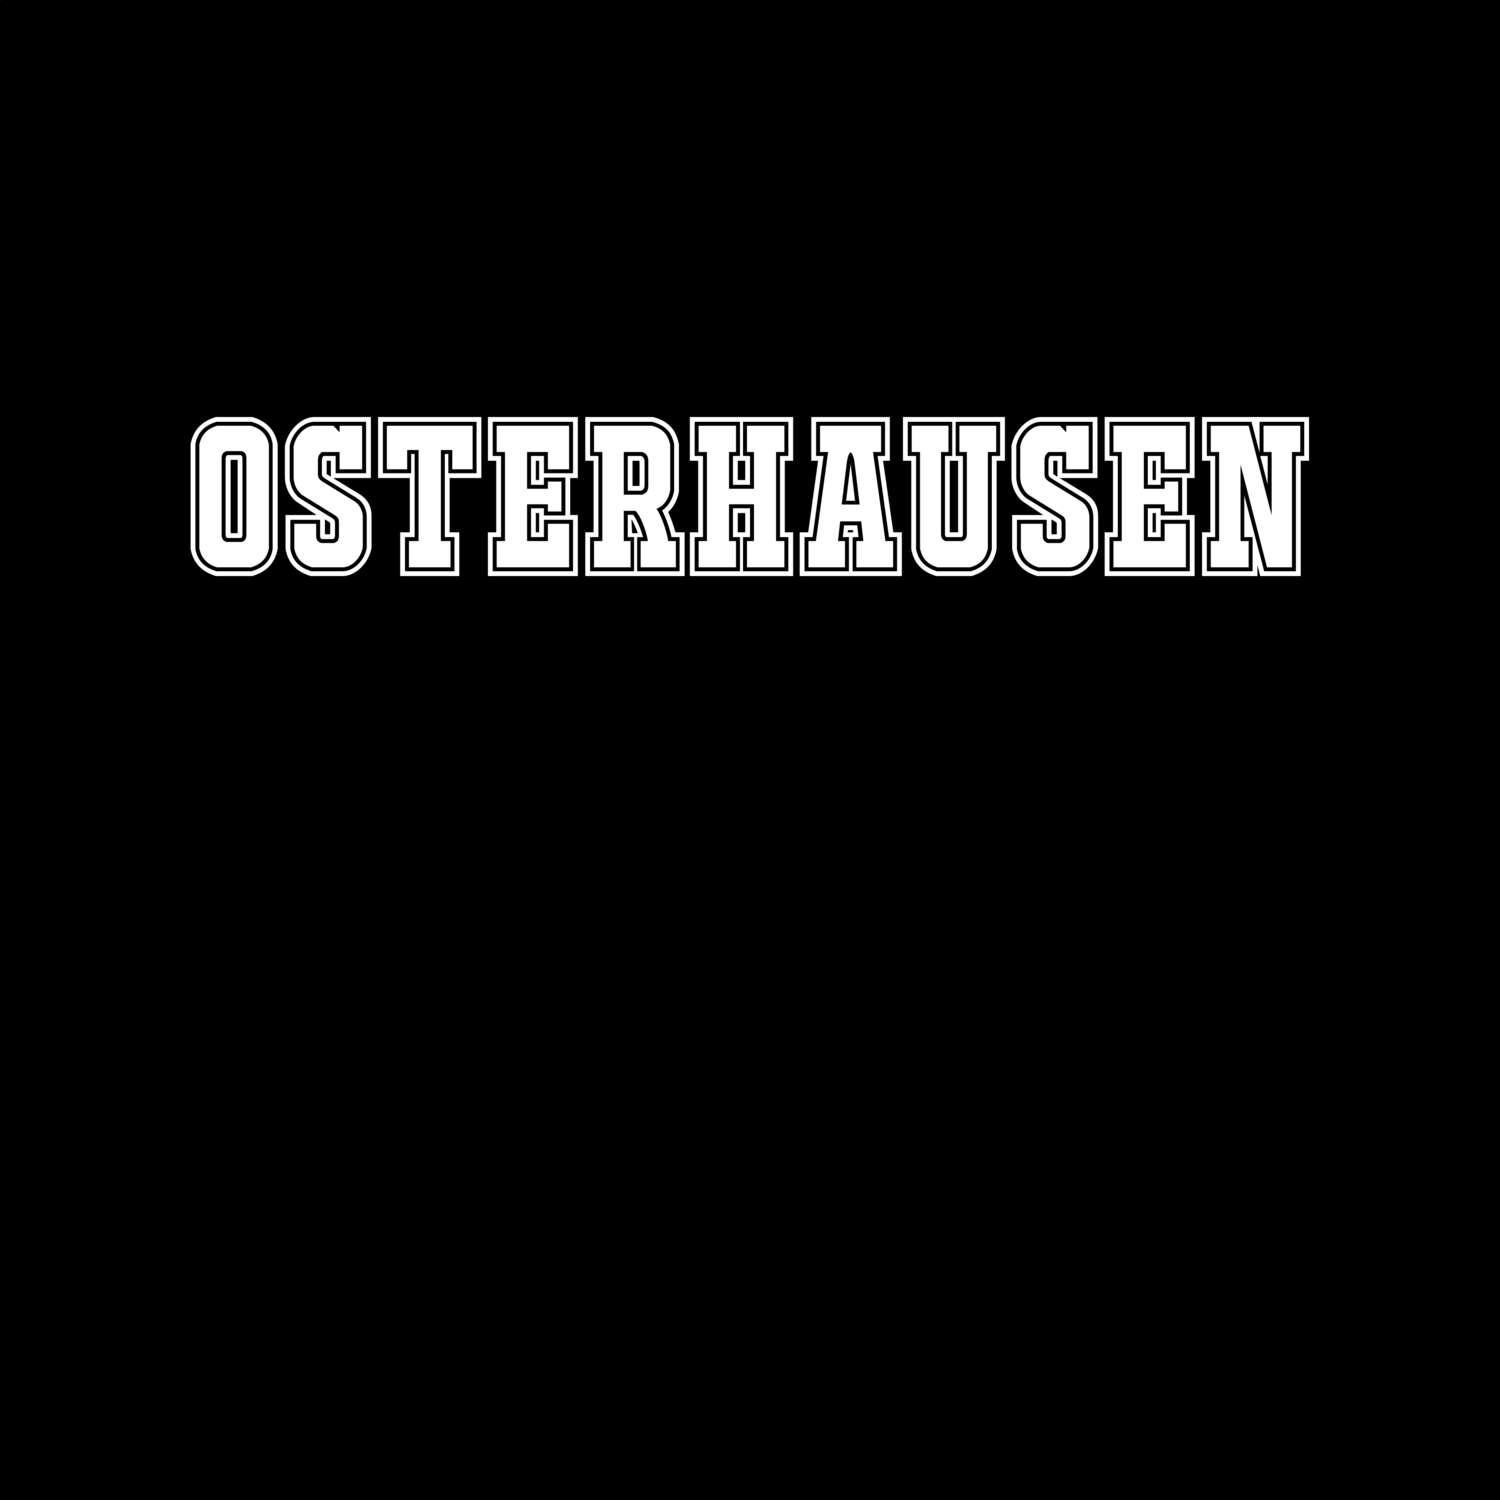 Osterhausen T-Shirt »Classic«